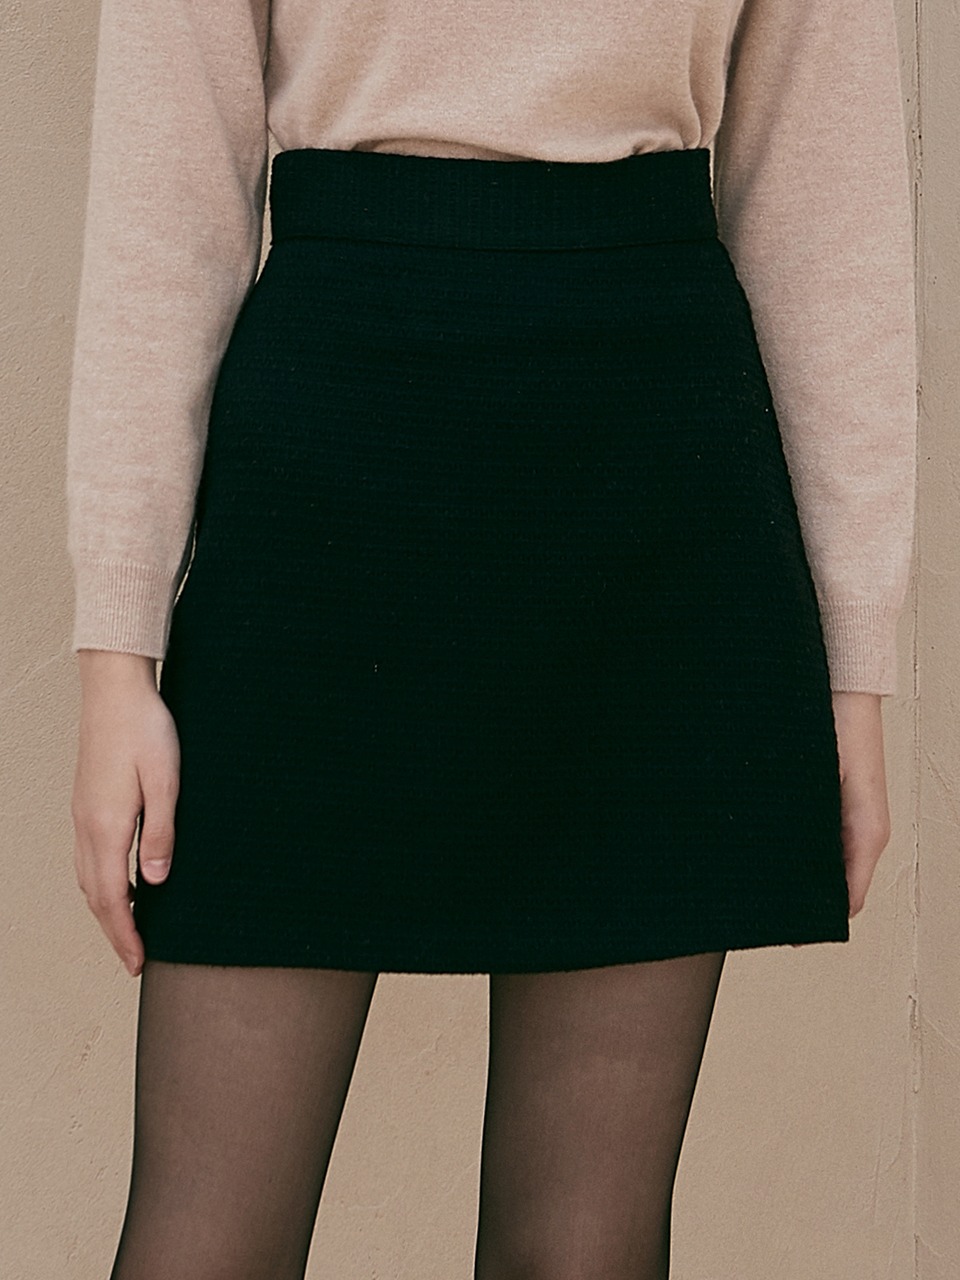 j856 mini skirt (black)